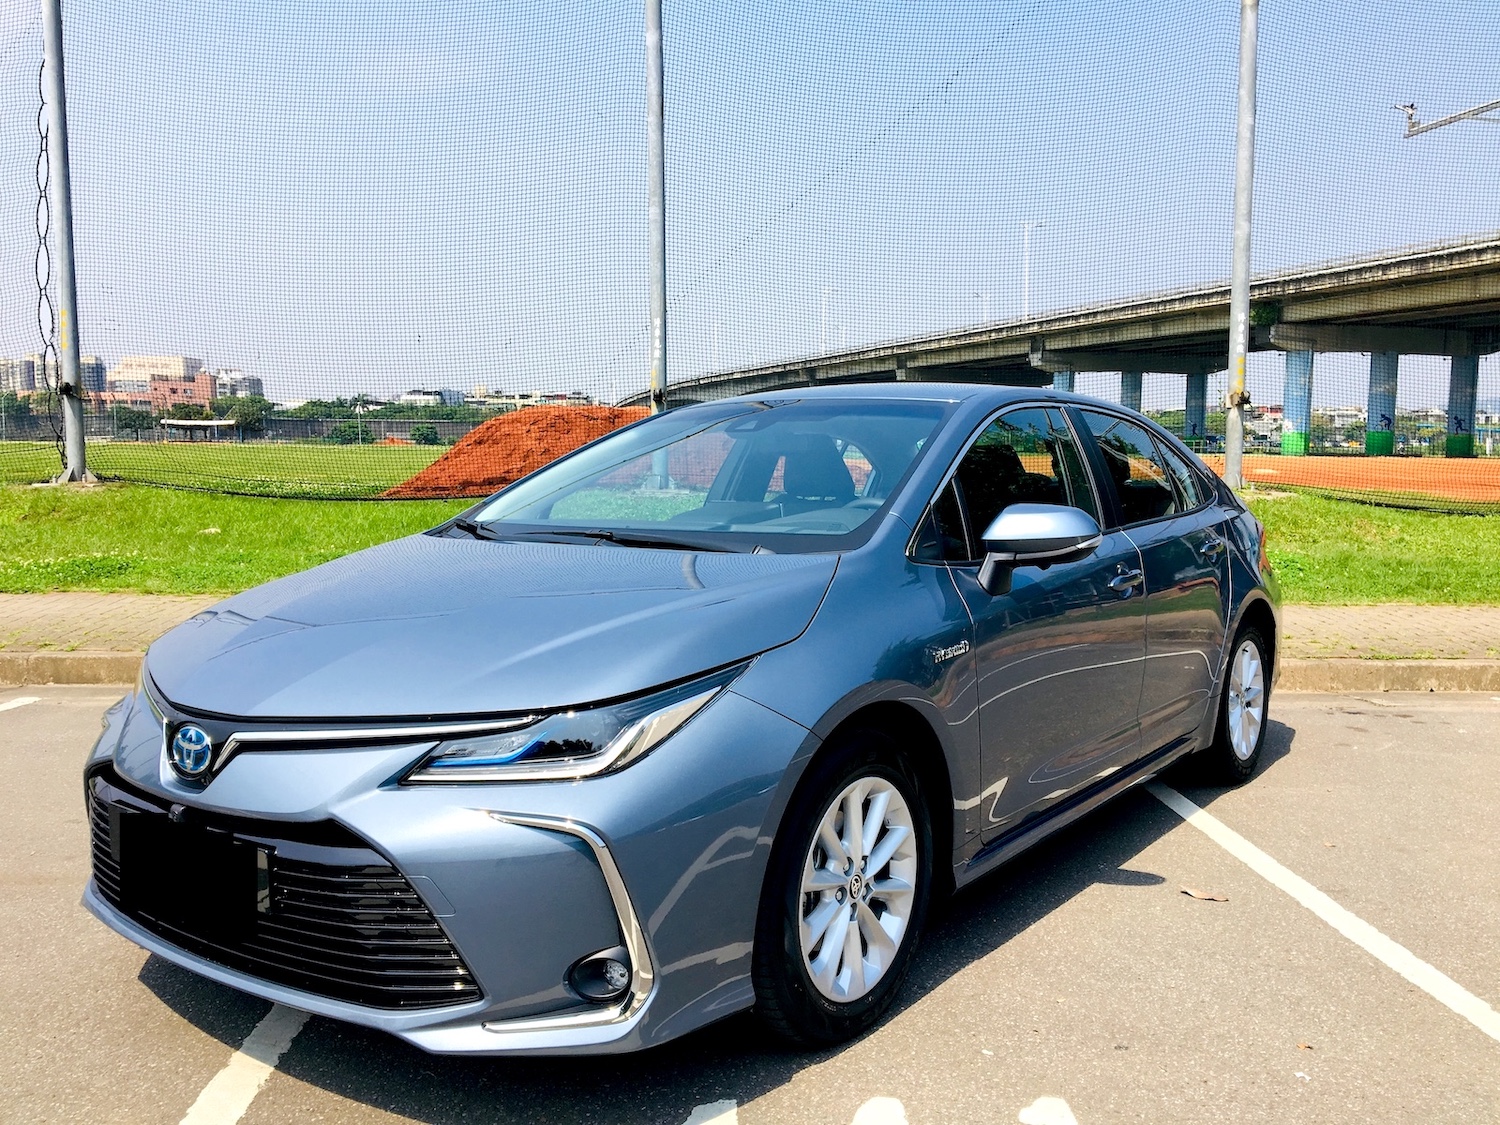 2019 全新12代 Toyota Altis 1.8 Hybrid 油電車 旗艦版 搶先開箱心得 - 購車心得 - WeWanted 購車好幫手